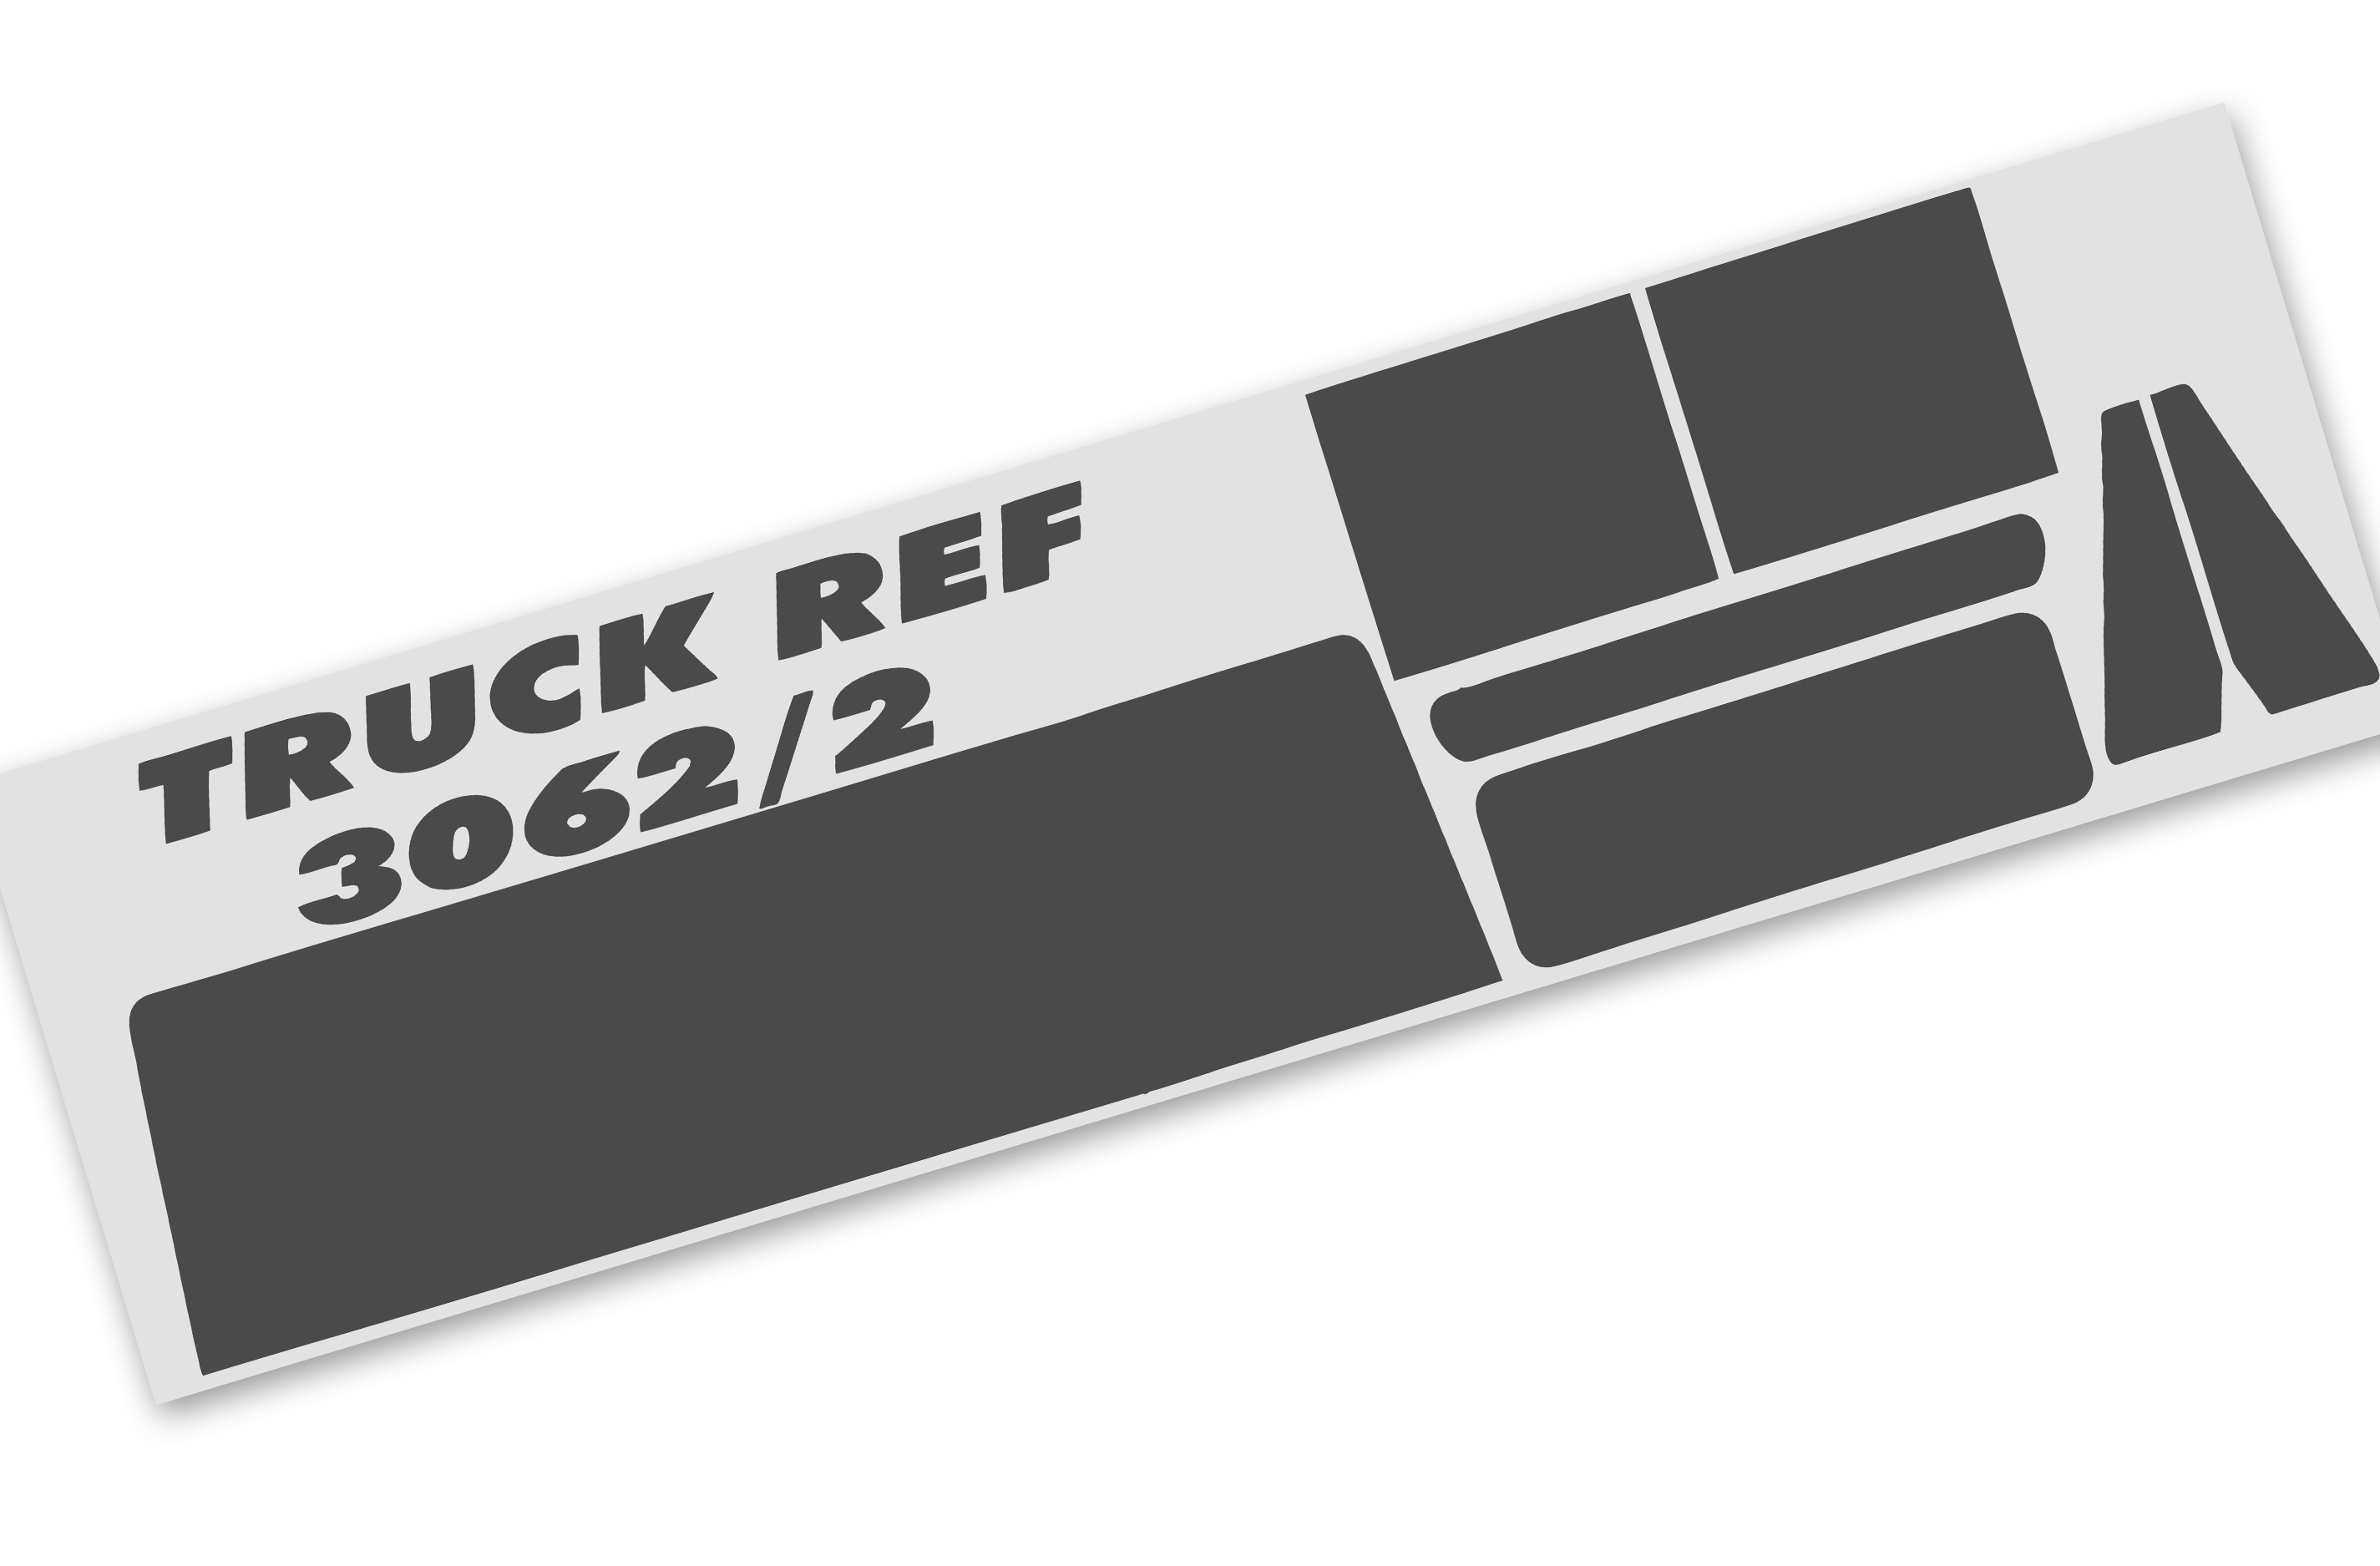 3262/02 FG  FG Sheet foil for FG Super Race Truck